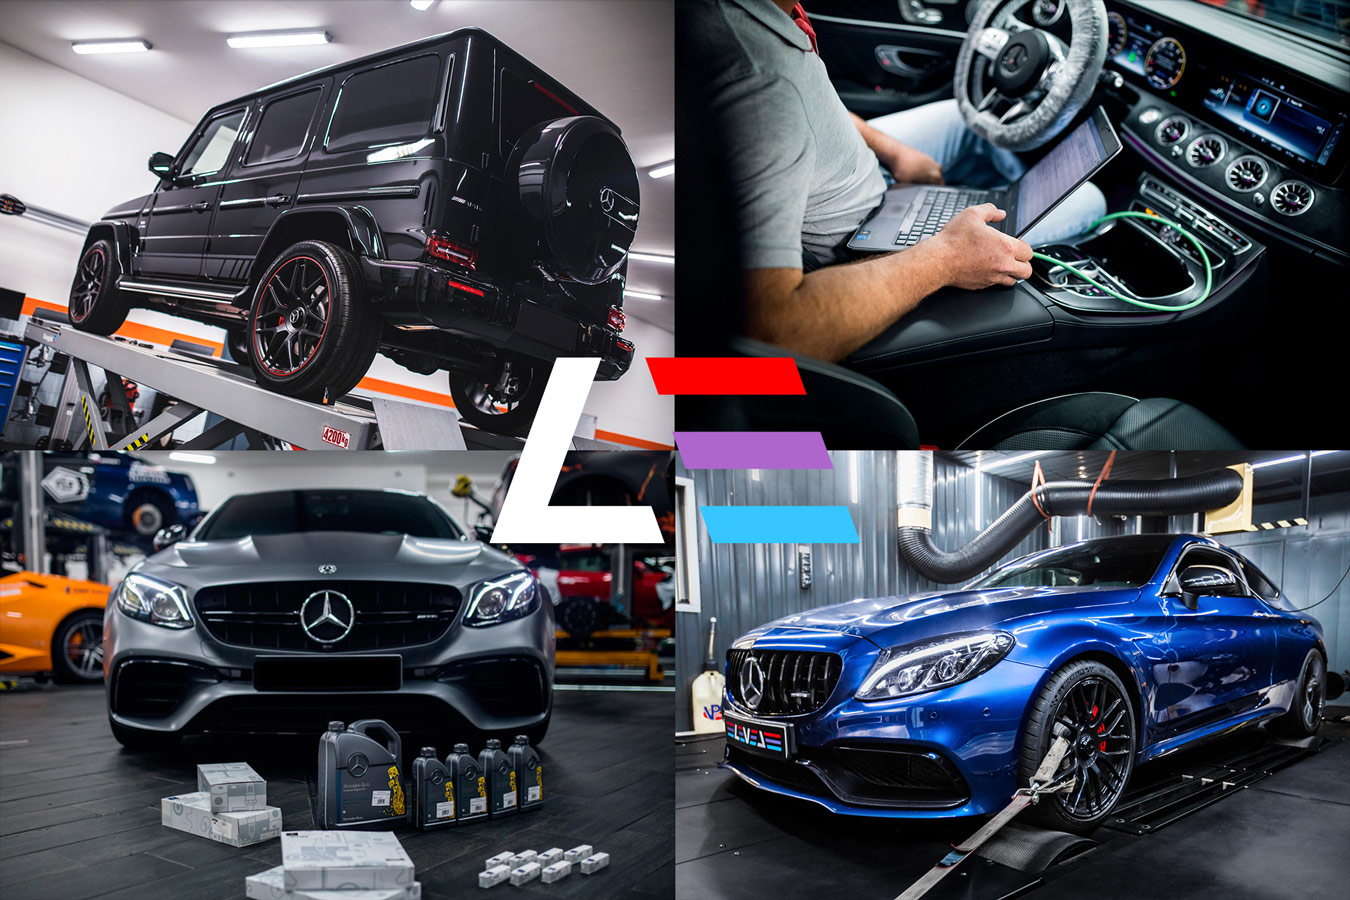 Технические компетенции LEVEL Performance в обслуживании автомобилей марки Mercedes-Benz охватывают все виды работ, кроме кузовного ремонта